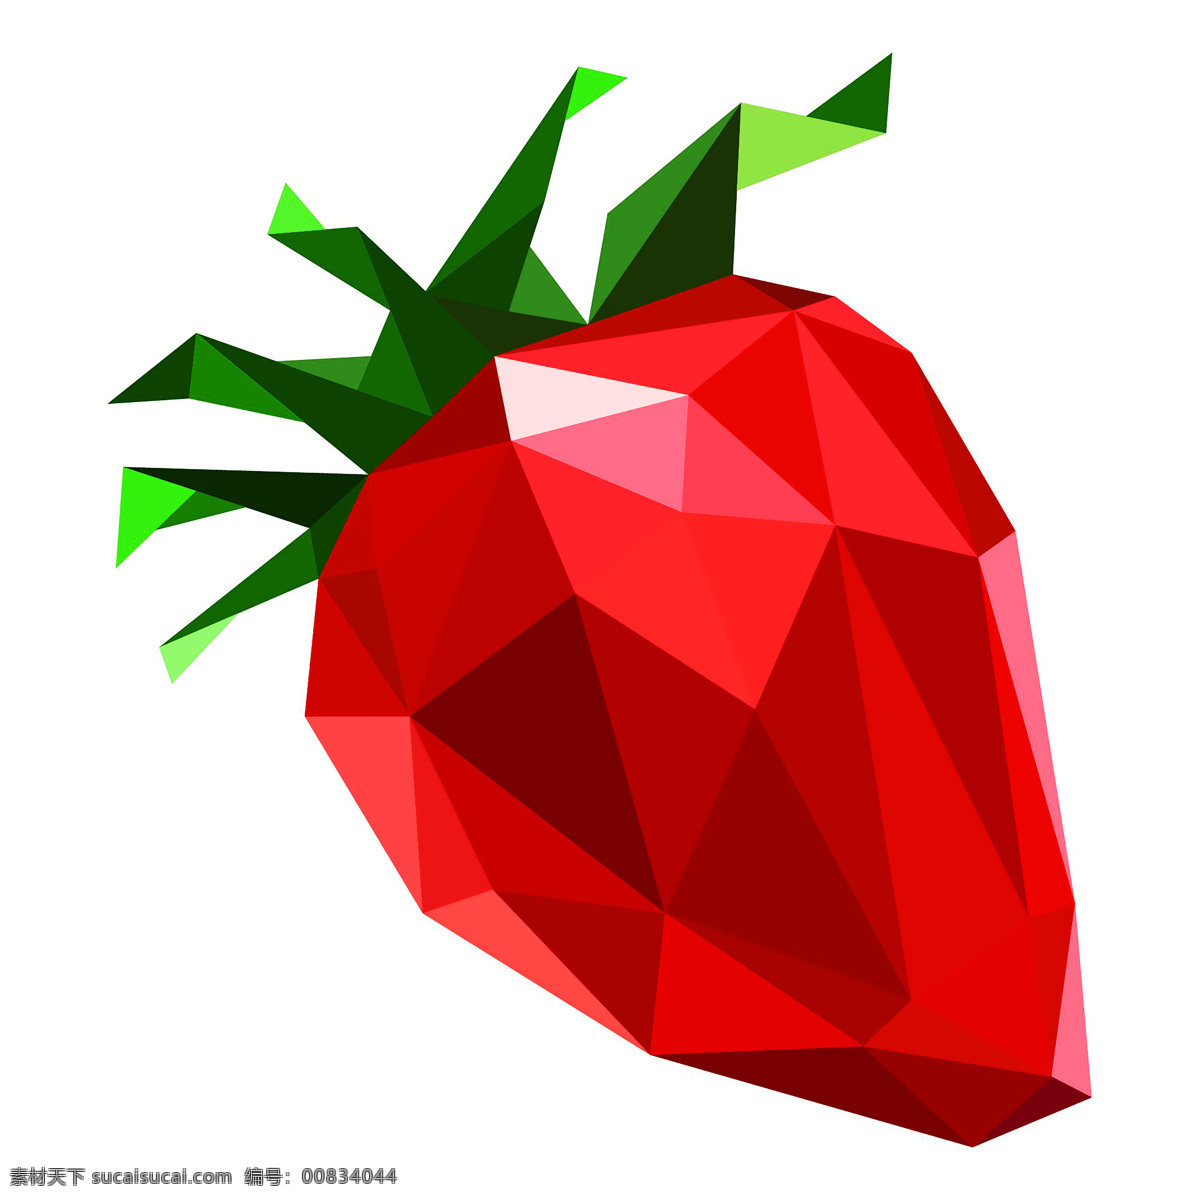 草莓插画 插画 草莓 水晶草莓 钻石草莓